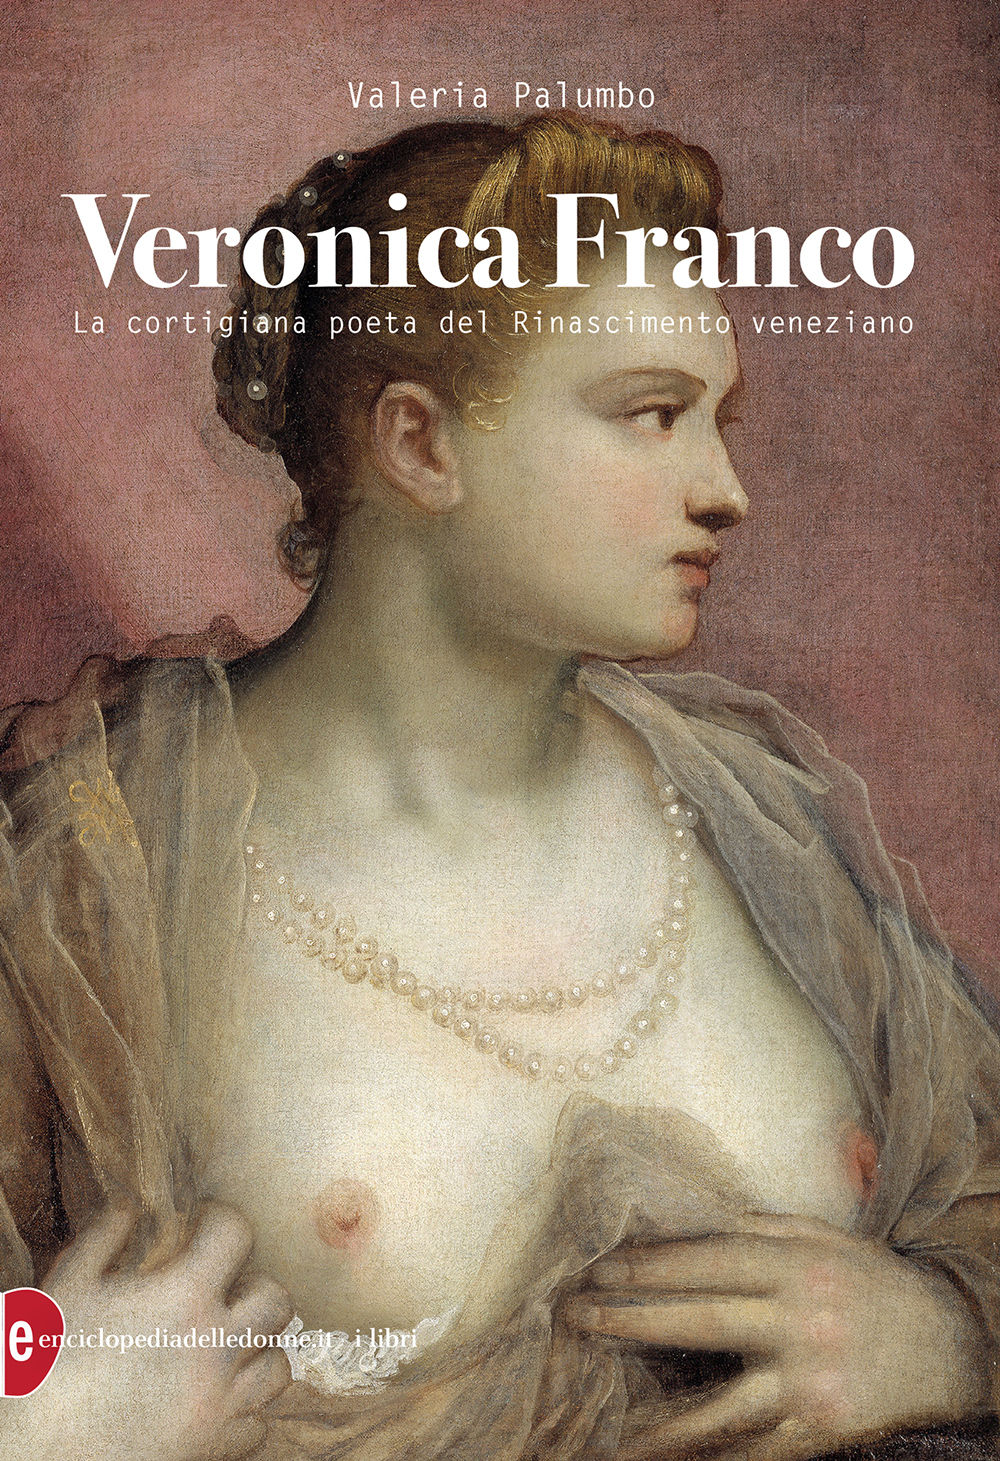 copertina di: Veronica Franco La cortigiana poeta del Rinascimento veneziano Valeria Palumbo